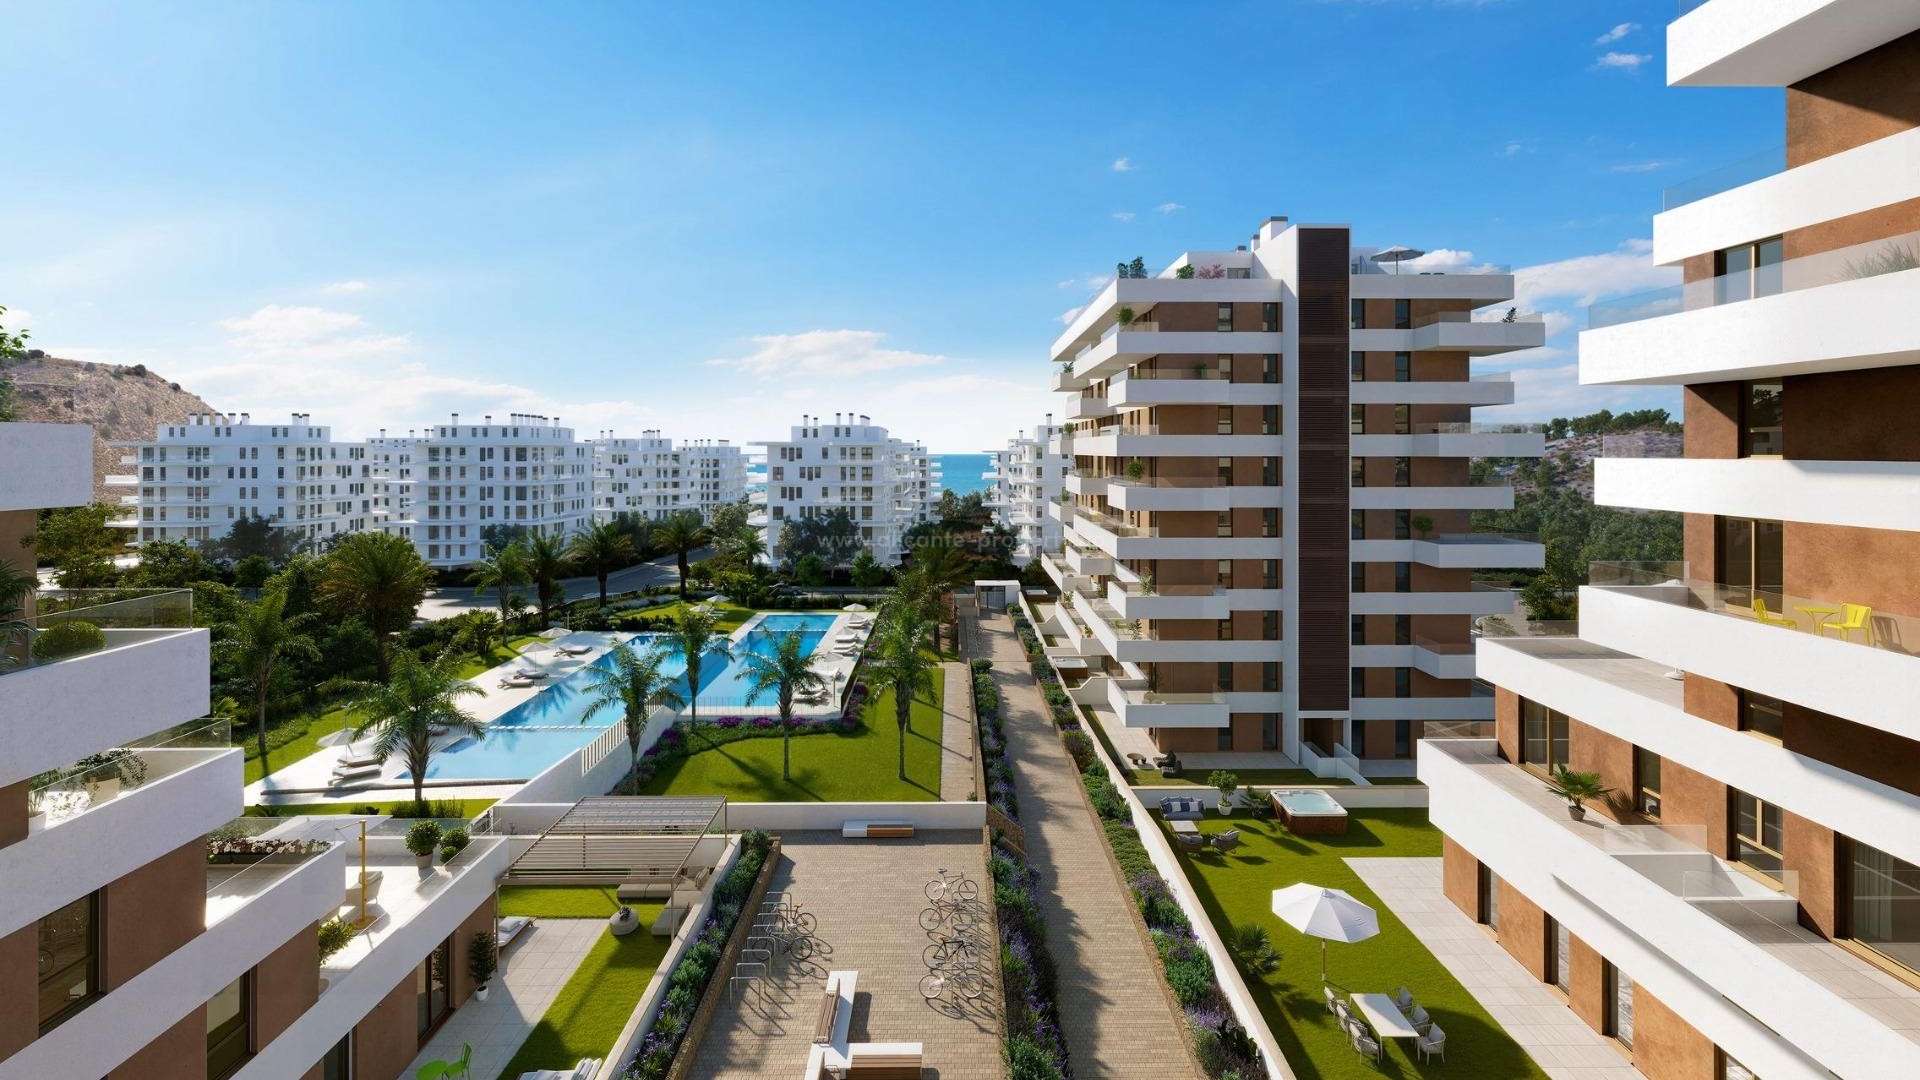 Nye leiligheter i Villajoyosa bare 450 meter fra strand, 2/3 soverom, 2 bad, svømmebasseng, treningsstudio, stor terrasse. 1 etasje med privat hage.